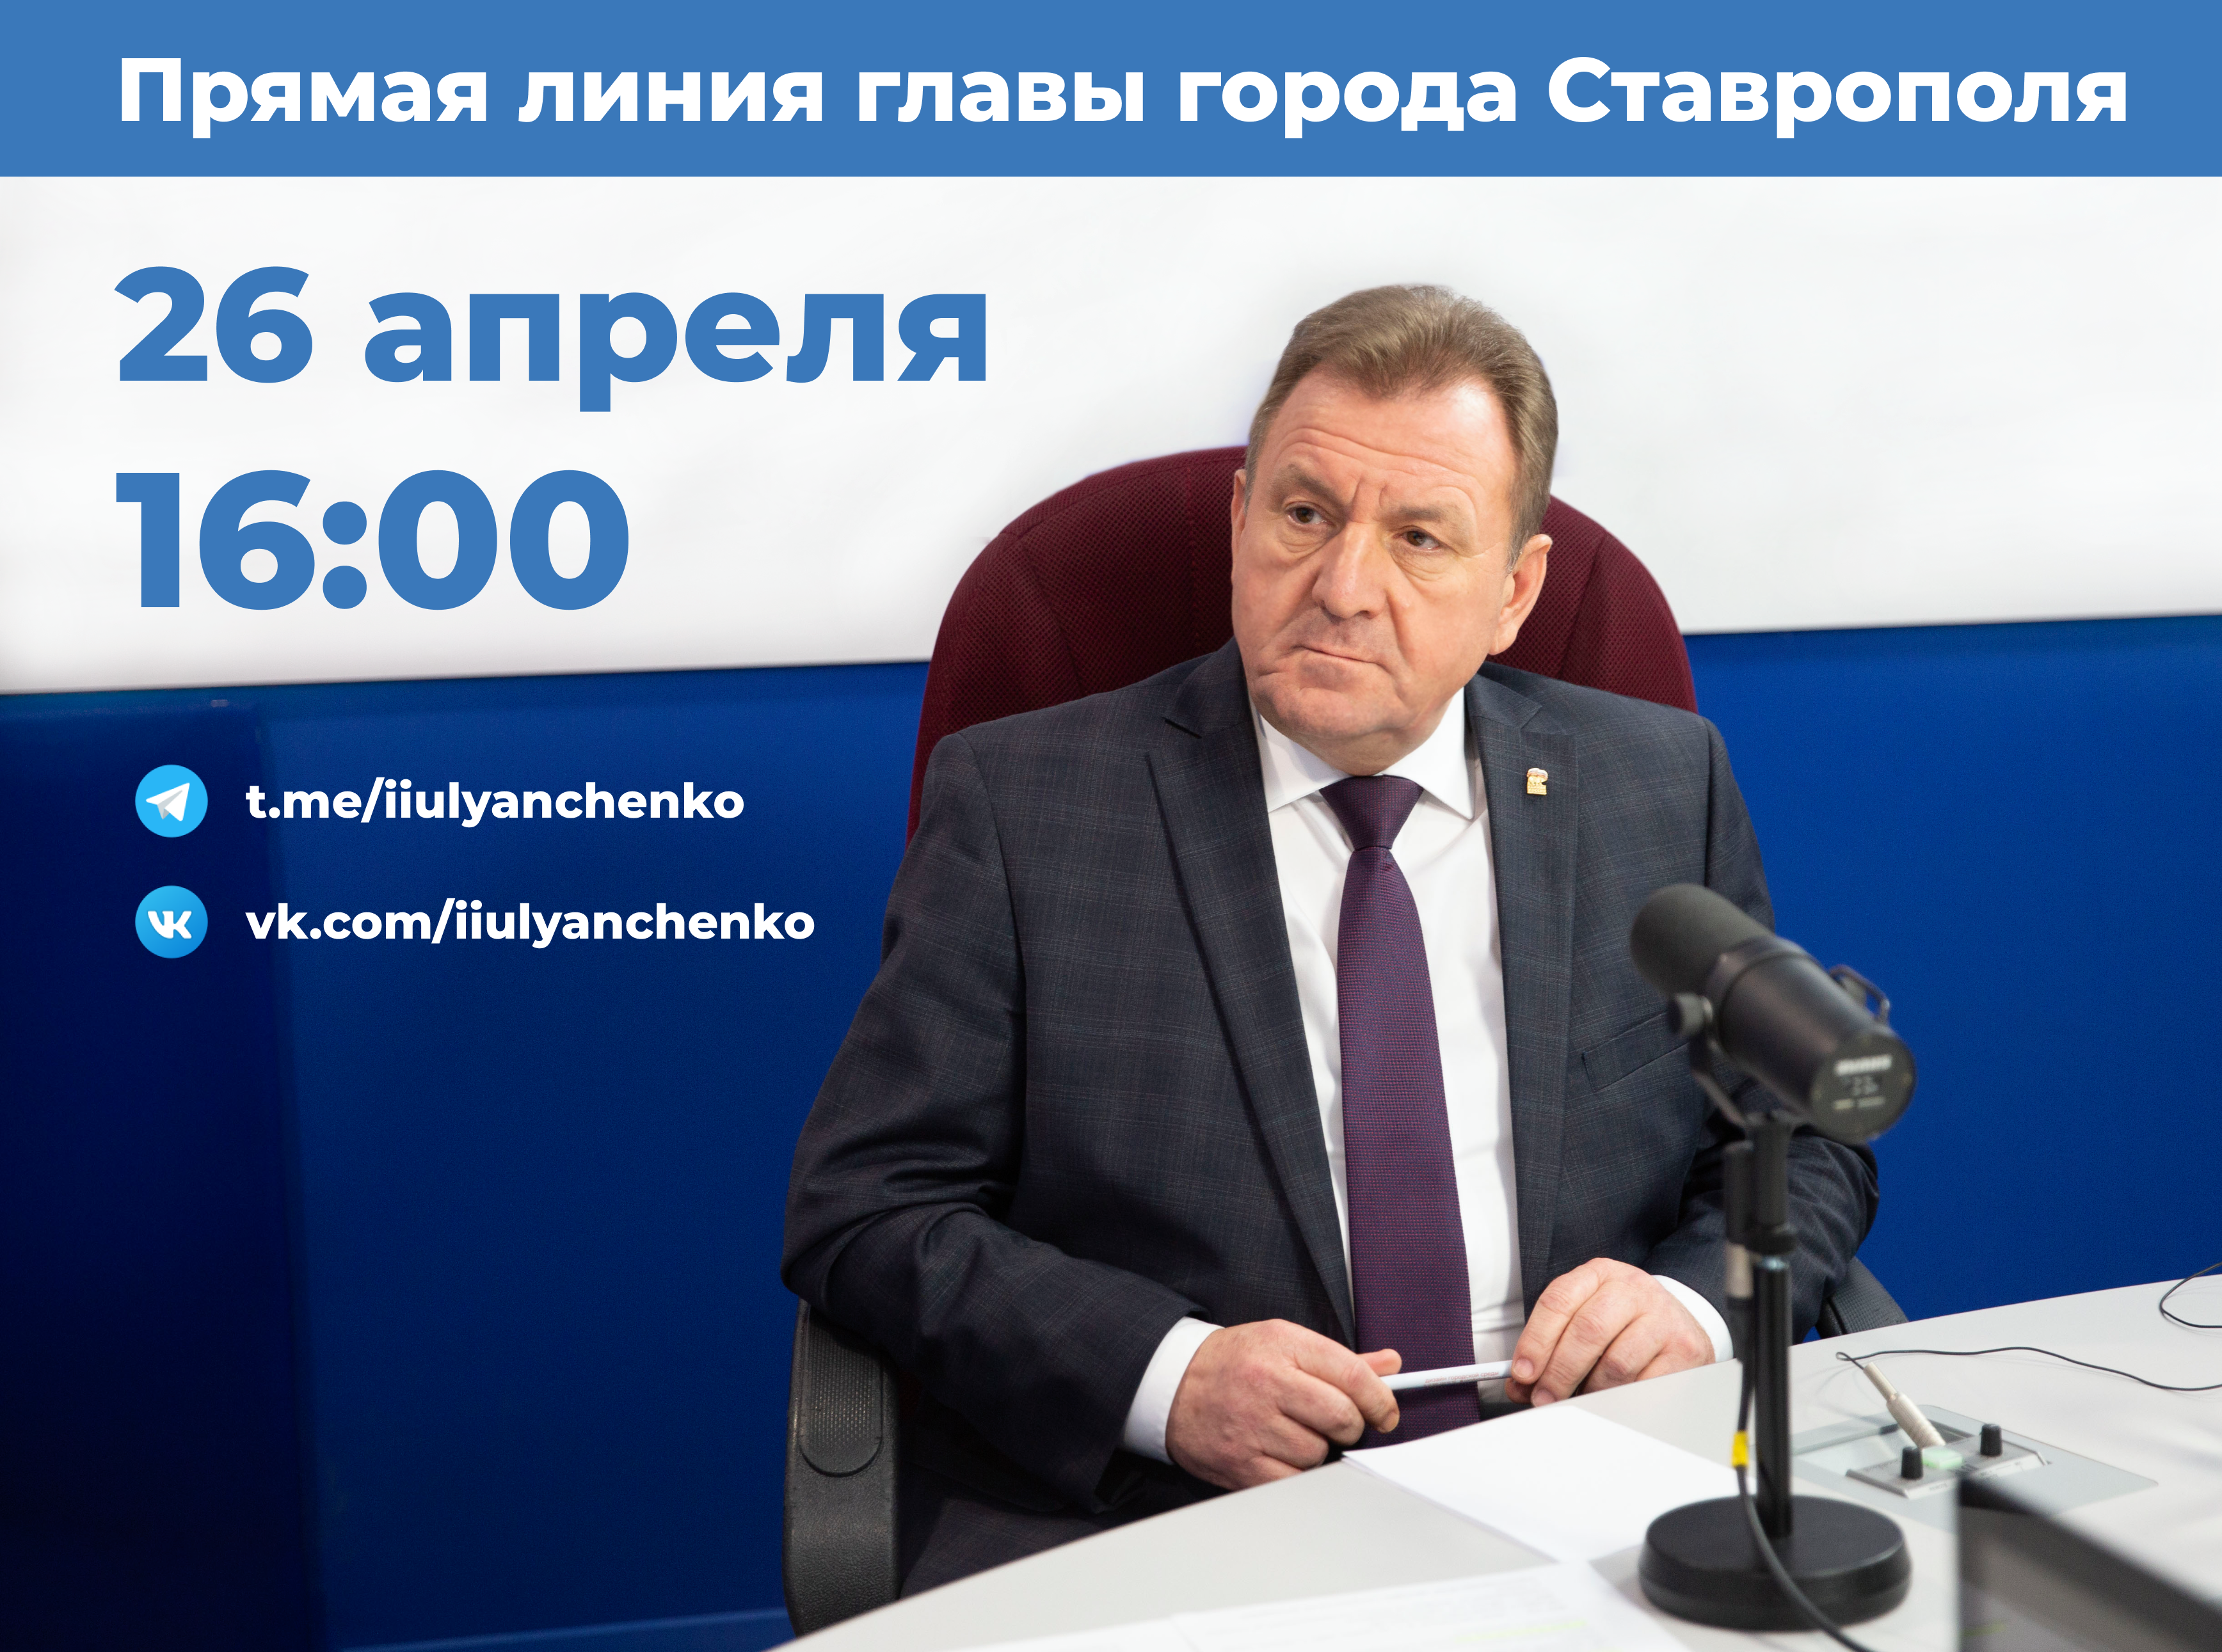 Глава Ставрополя Иван Ульянченко ответит на вопросы читателей в своих соцсетях